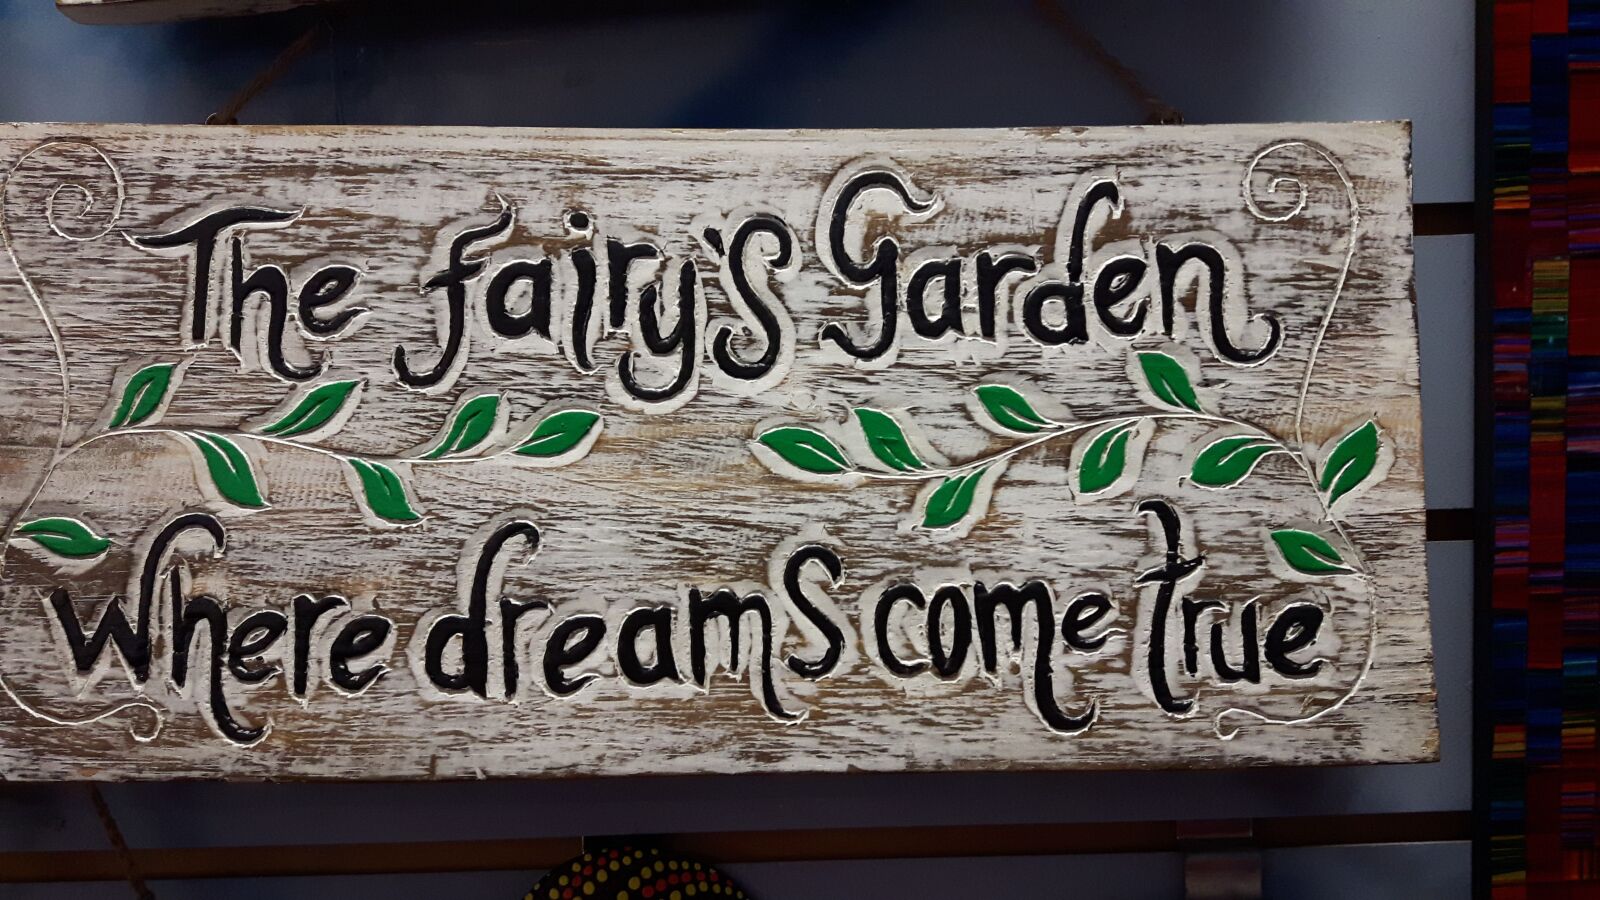 Samsung Galaxy S5 Neo sample photo. Fairy garden, where dreams photography